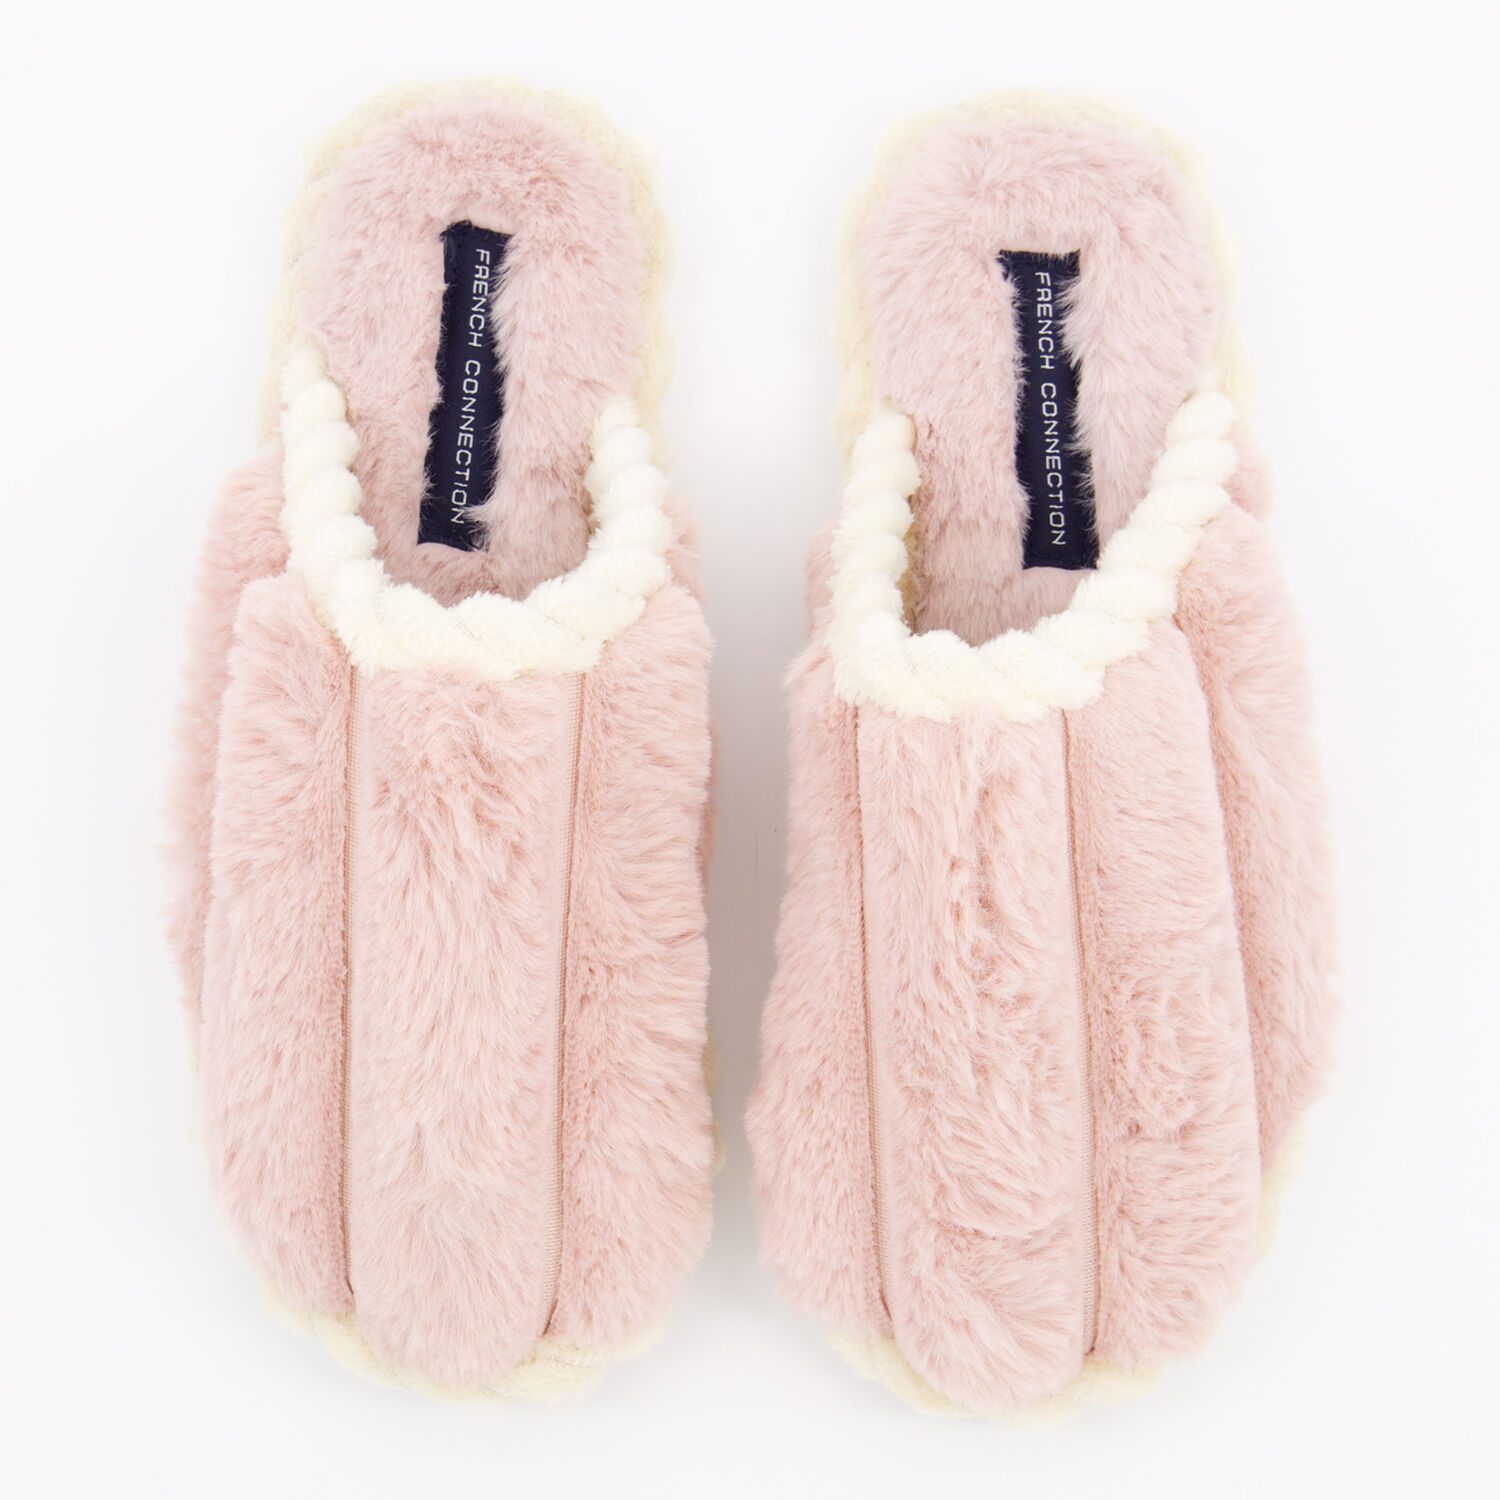 Pink Faux Fur Slippers - TK Maxx UK